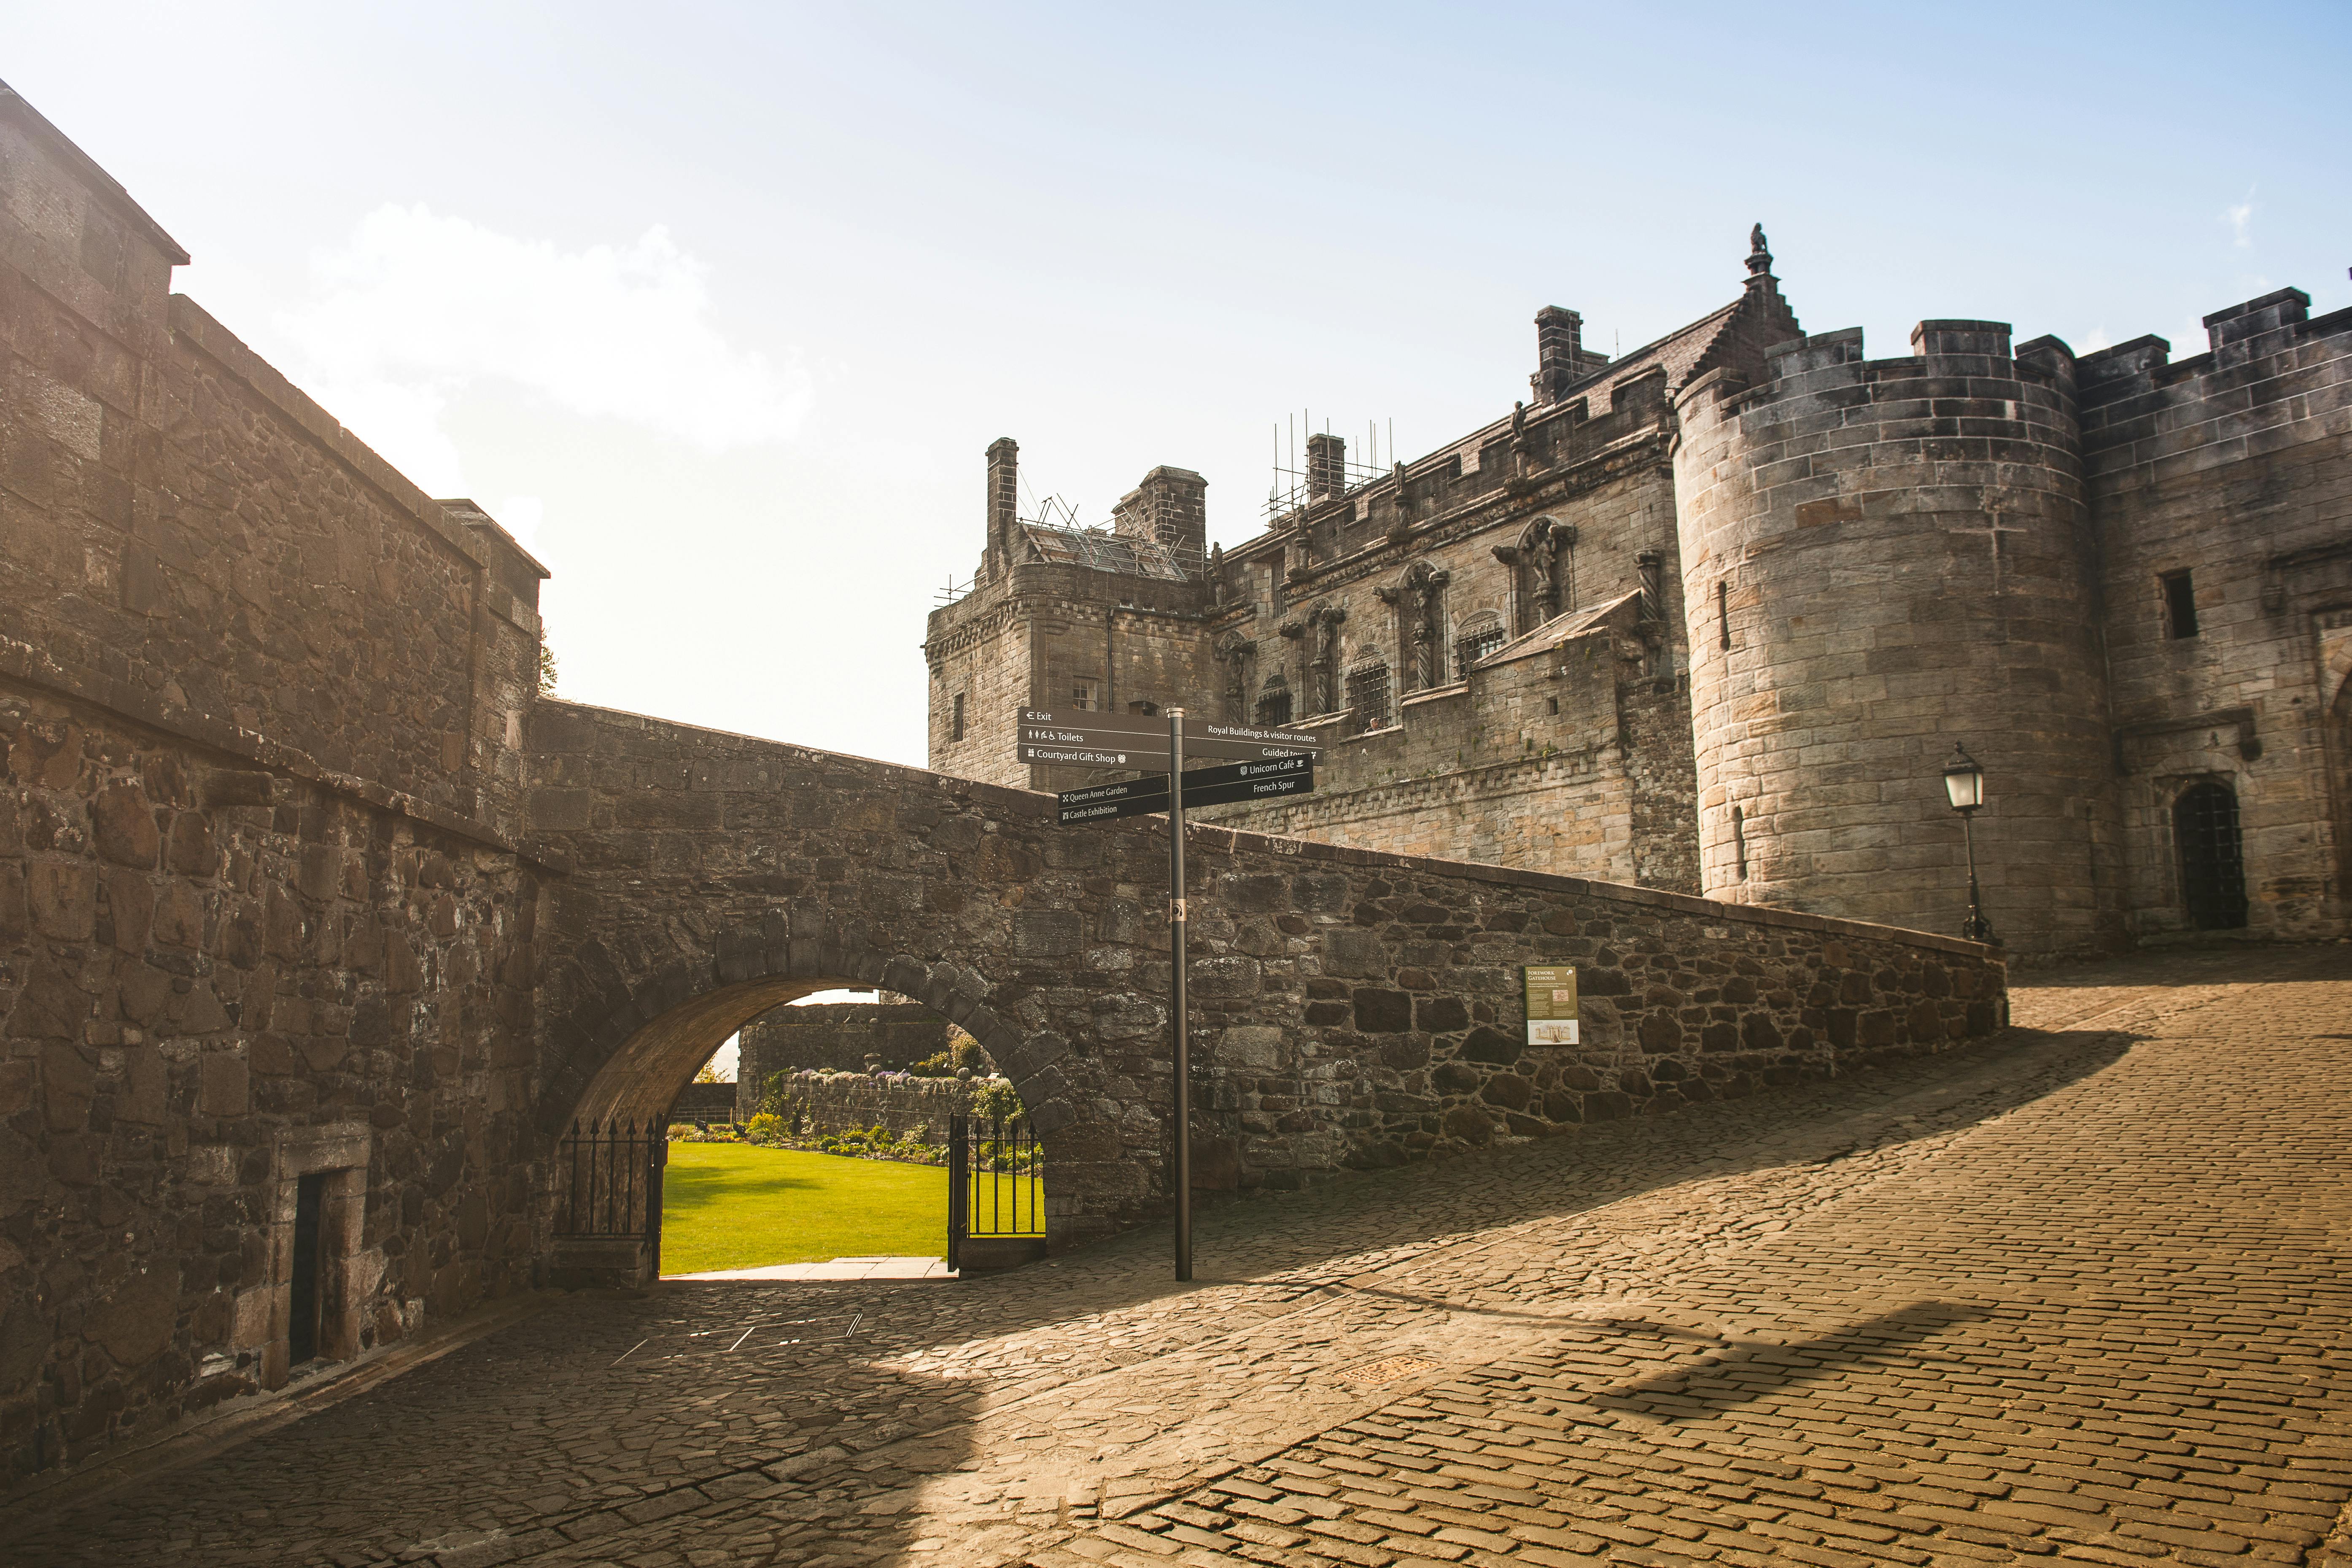 Excursão ao Castelo de Stirling, Loch Lomond e Whisky saindo de Glasgow